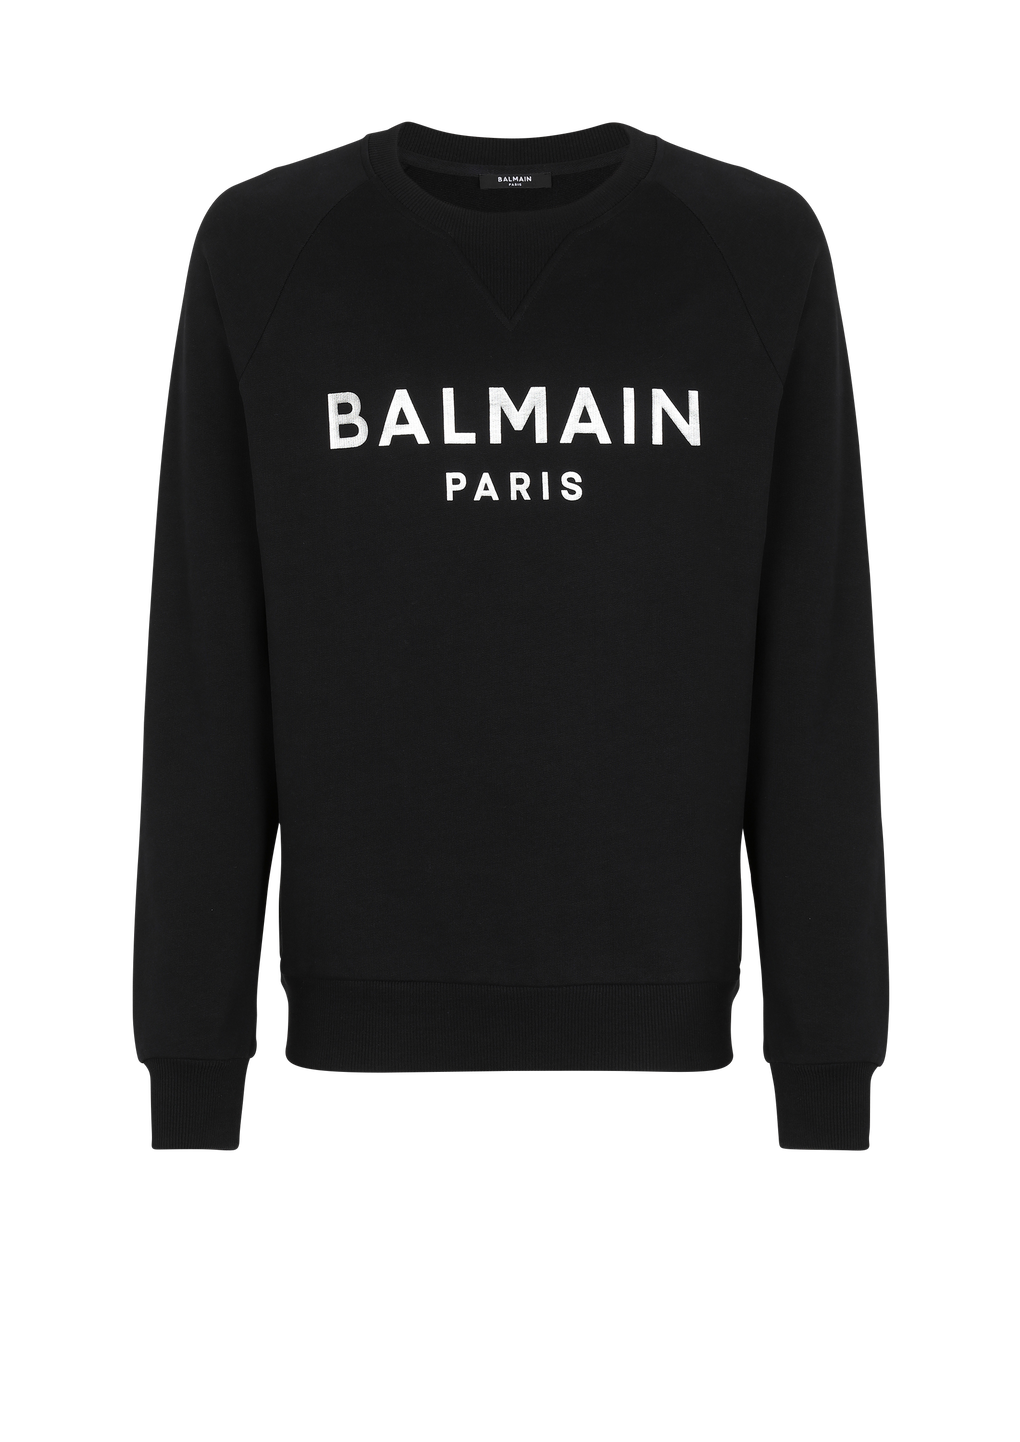 Sweat en coton éco-design imprimé logo Balmain, noir, hi-res